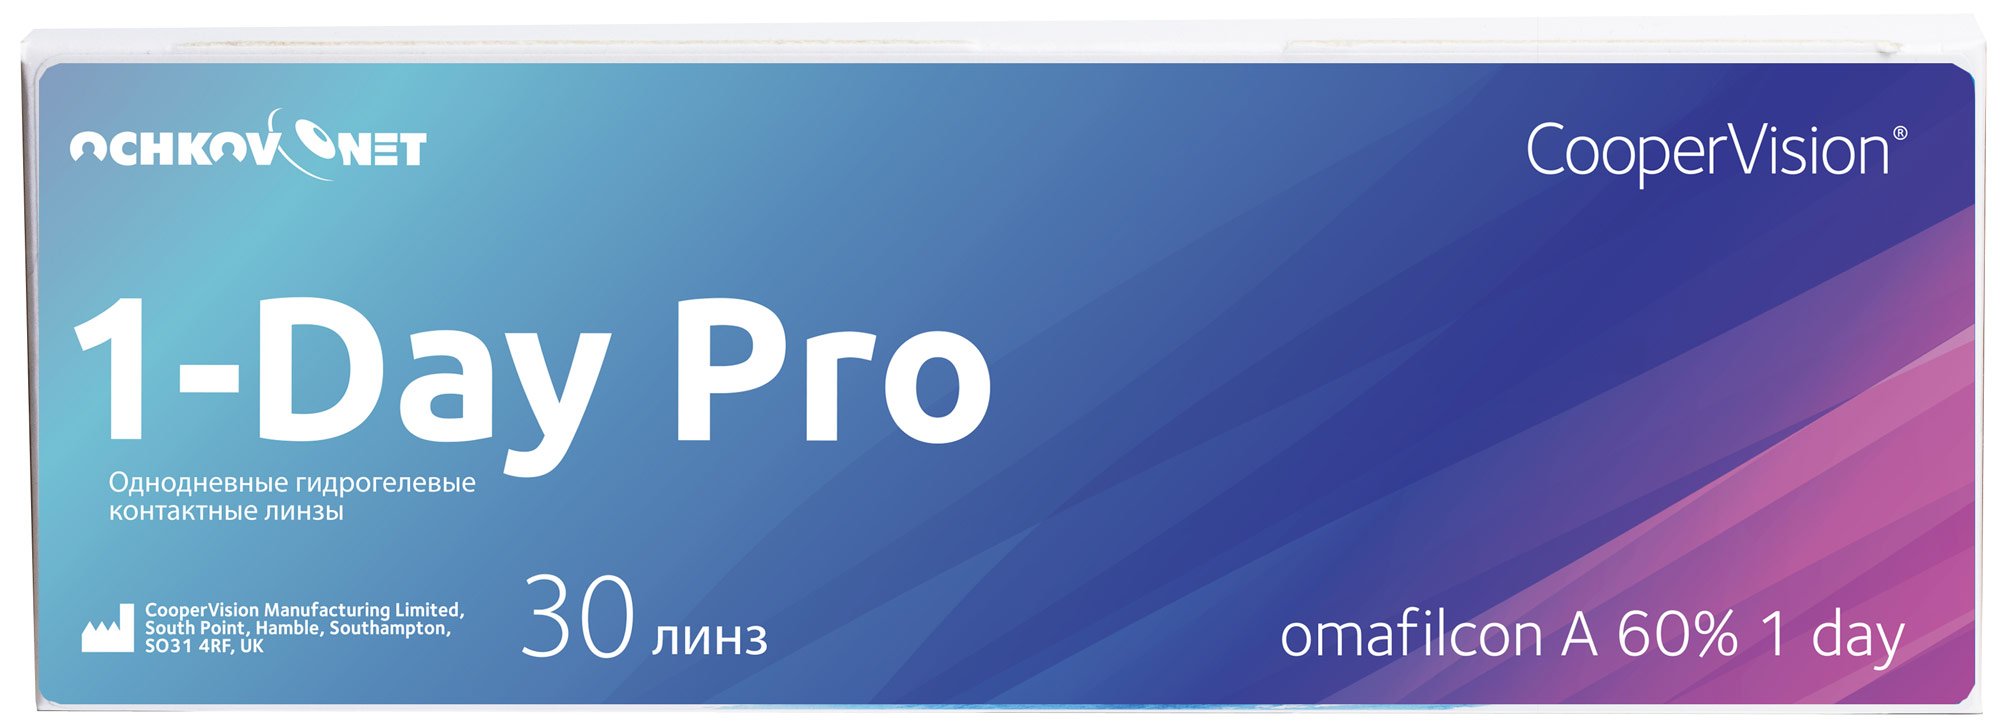 Купить Контактные линзы Ochkov.Net 1-Day Pro 30 линз 8.7, -2.25